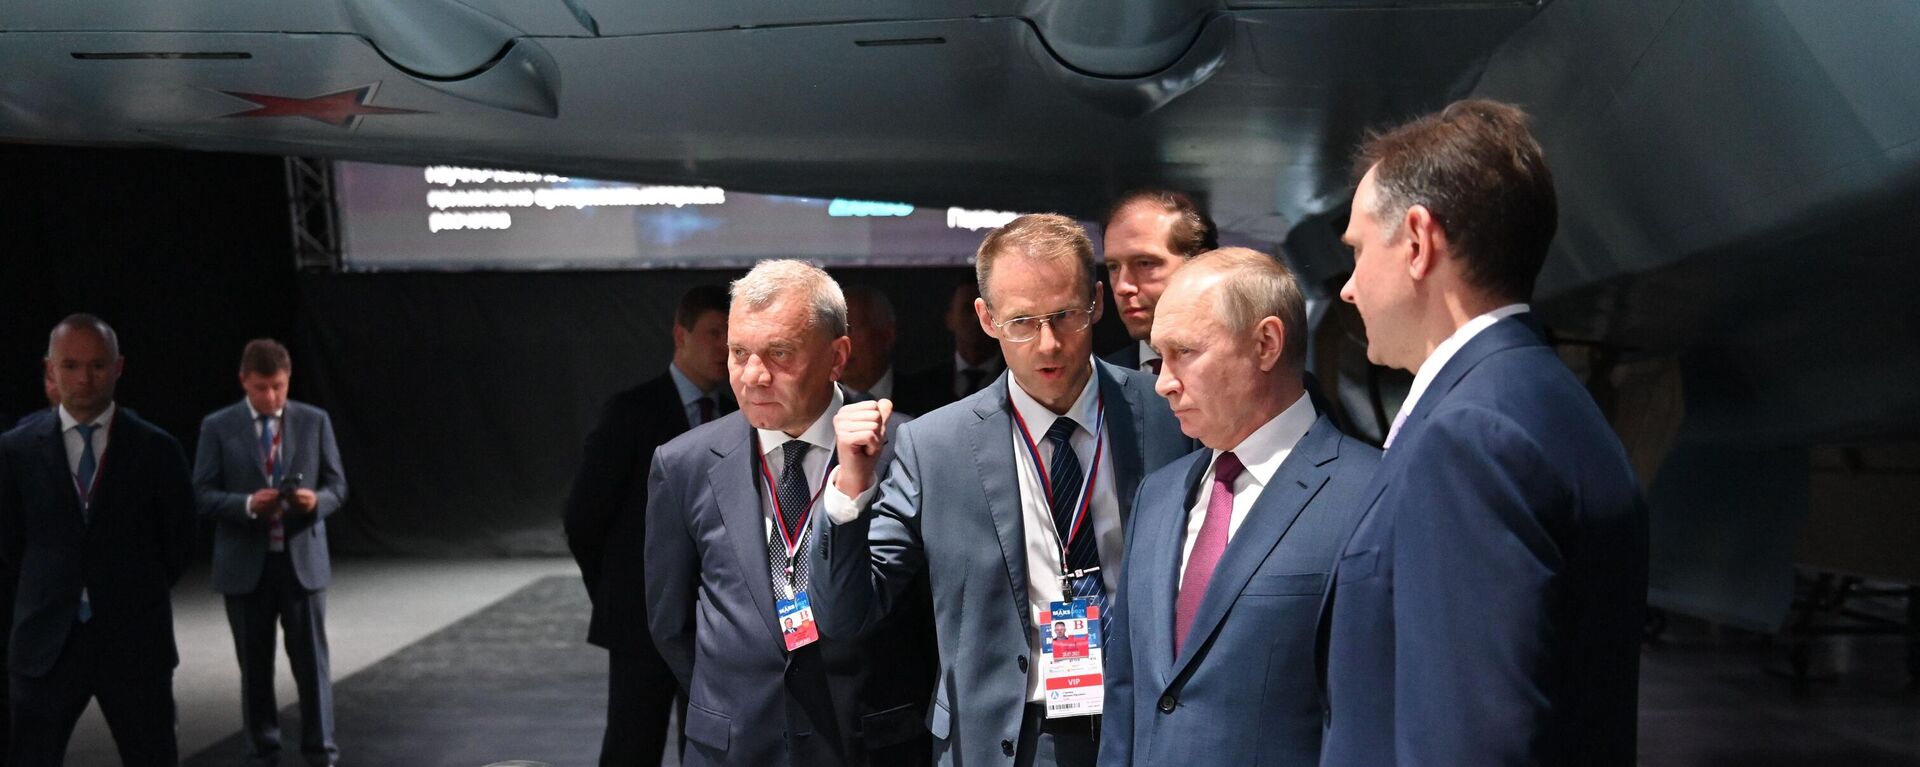 Krievijas prezidents apskatīja Sukhoi jauno vieglo iznīcinātāju MAKS 2021 - Sputnik Latvija, 1920, 22.07.2021